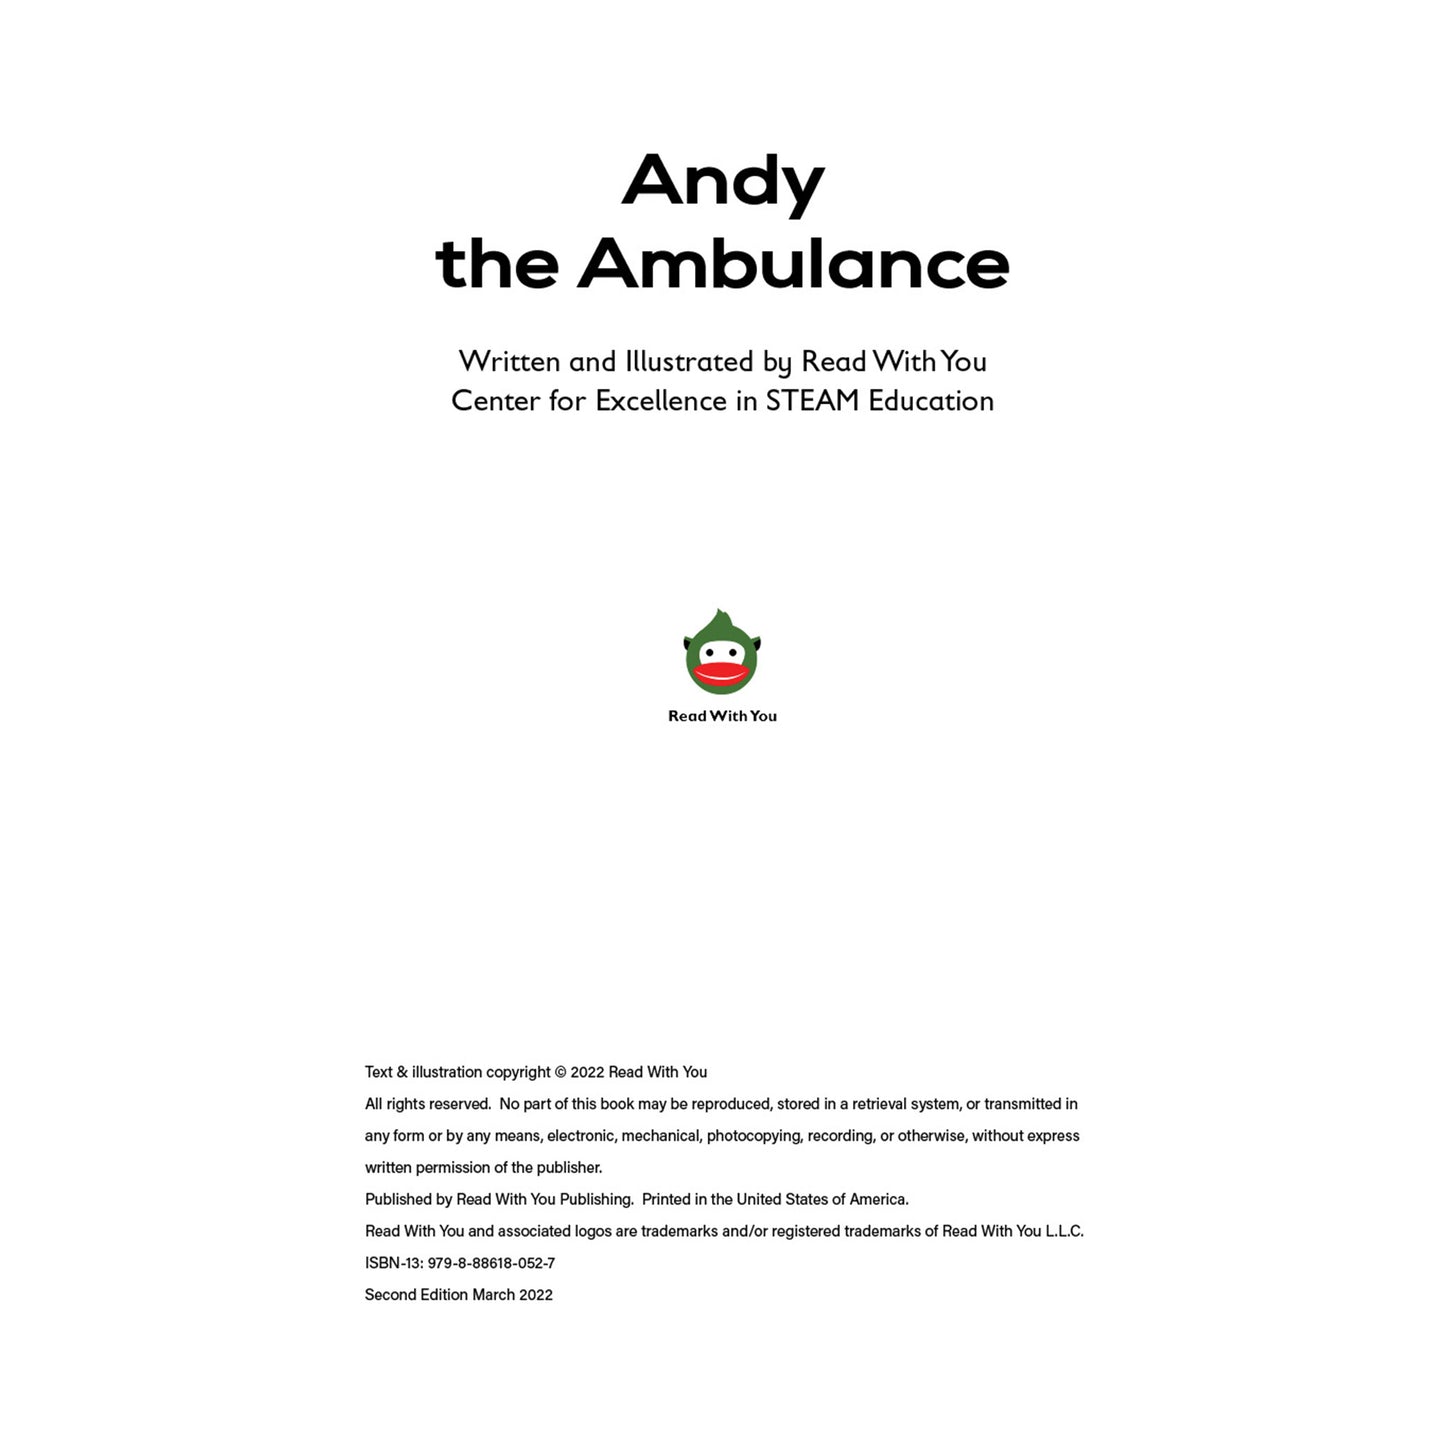 Andy the Ambulance